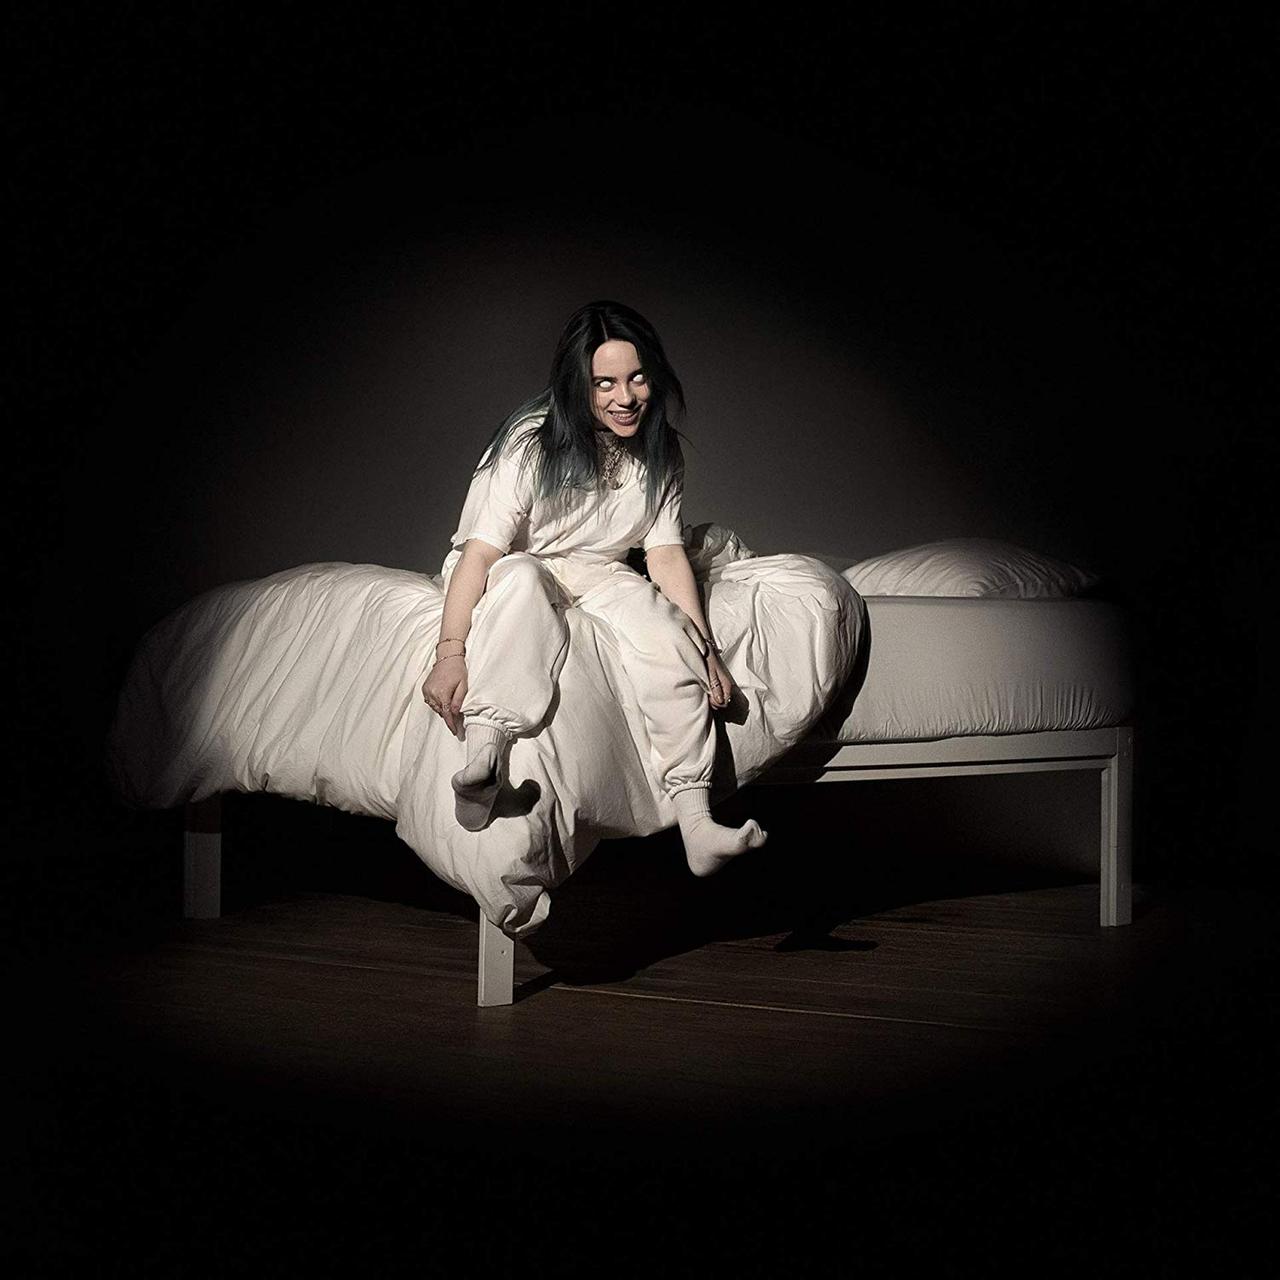 Das Albumcover von "When We All Fall Asleep, Where Do We Go?" von Billie Eilish